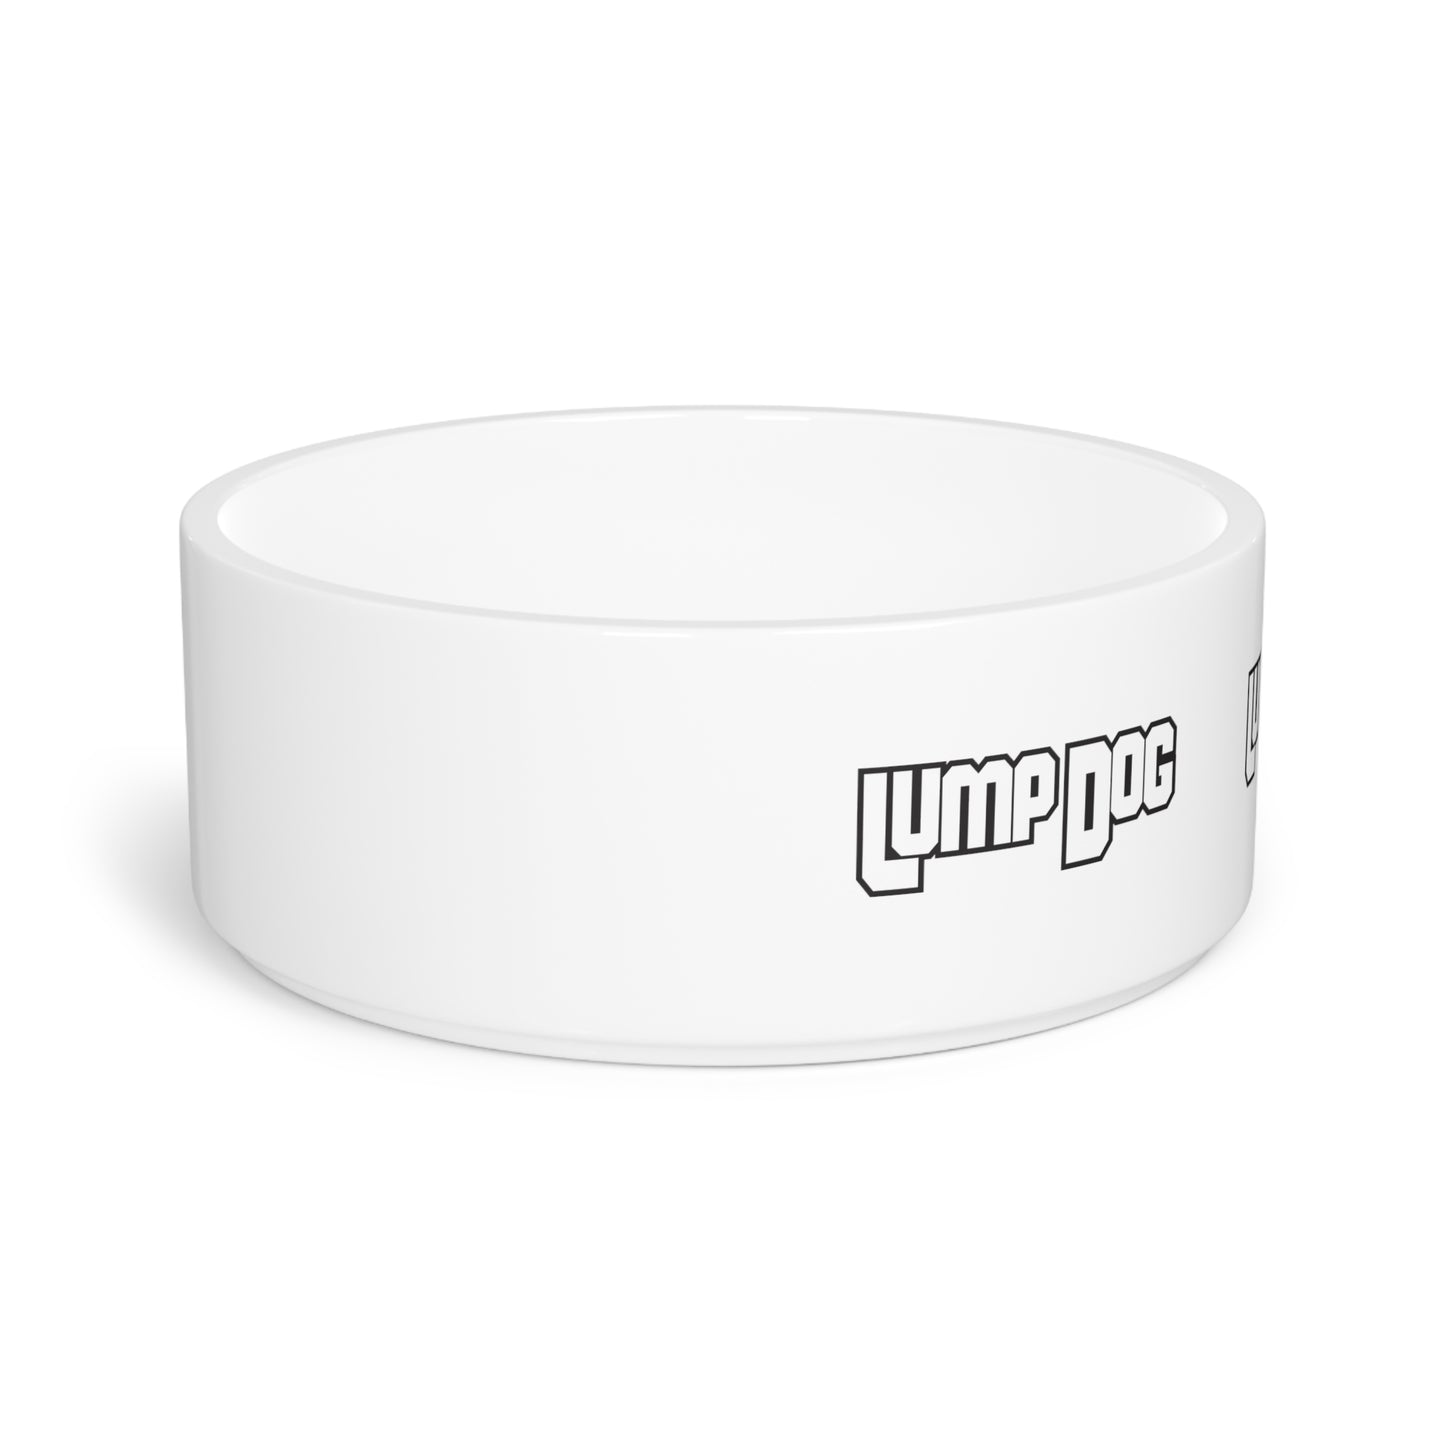 Lump Dog™ Pet Bowl